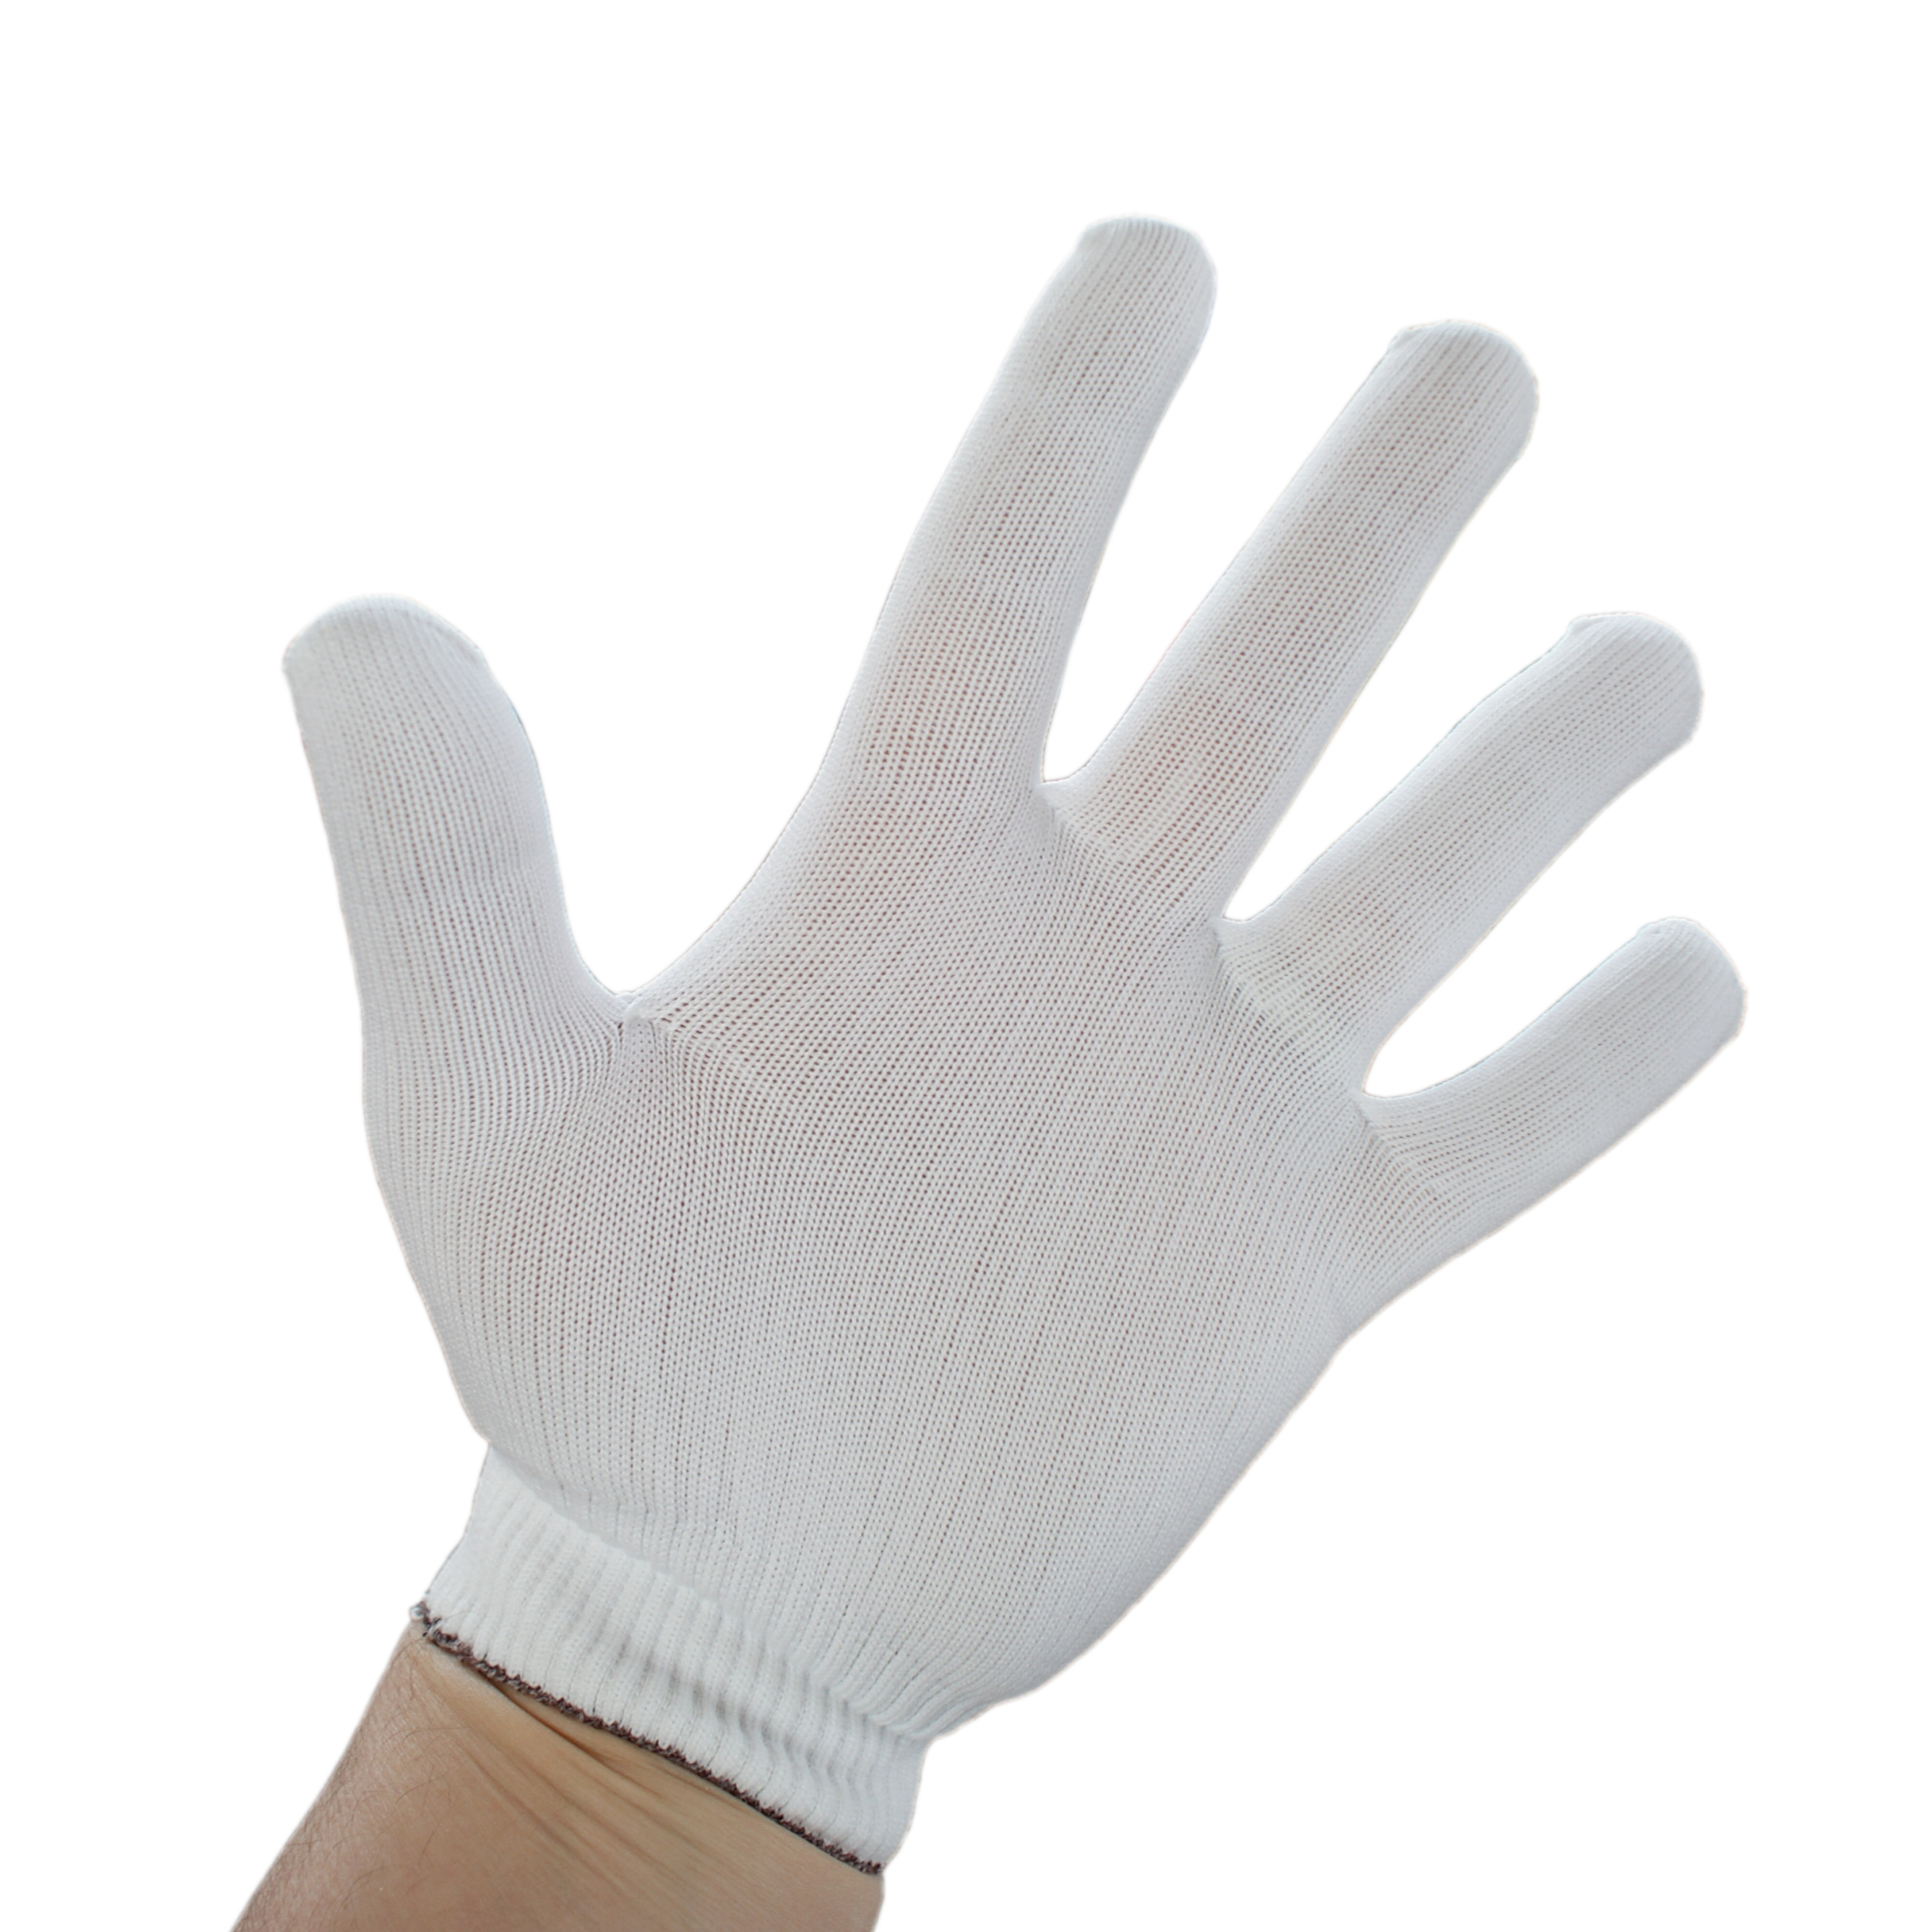 Nylon-Stretch gloves 7